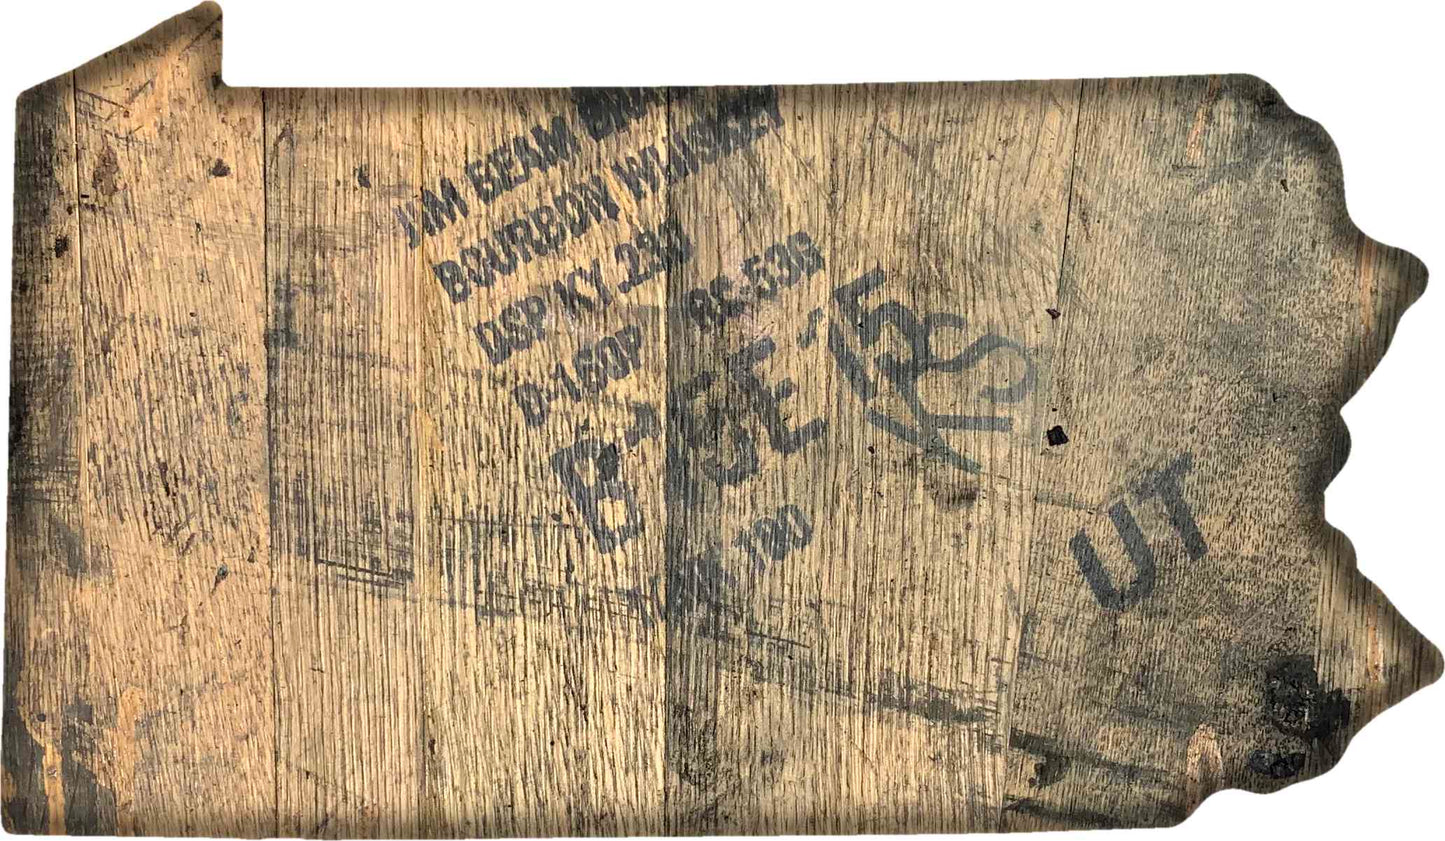 Bourbon Barrel State Wall Art - 9"